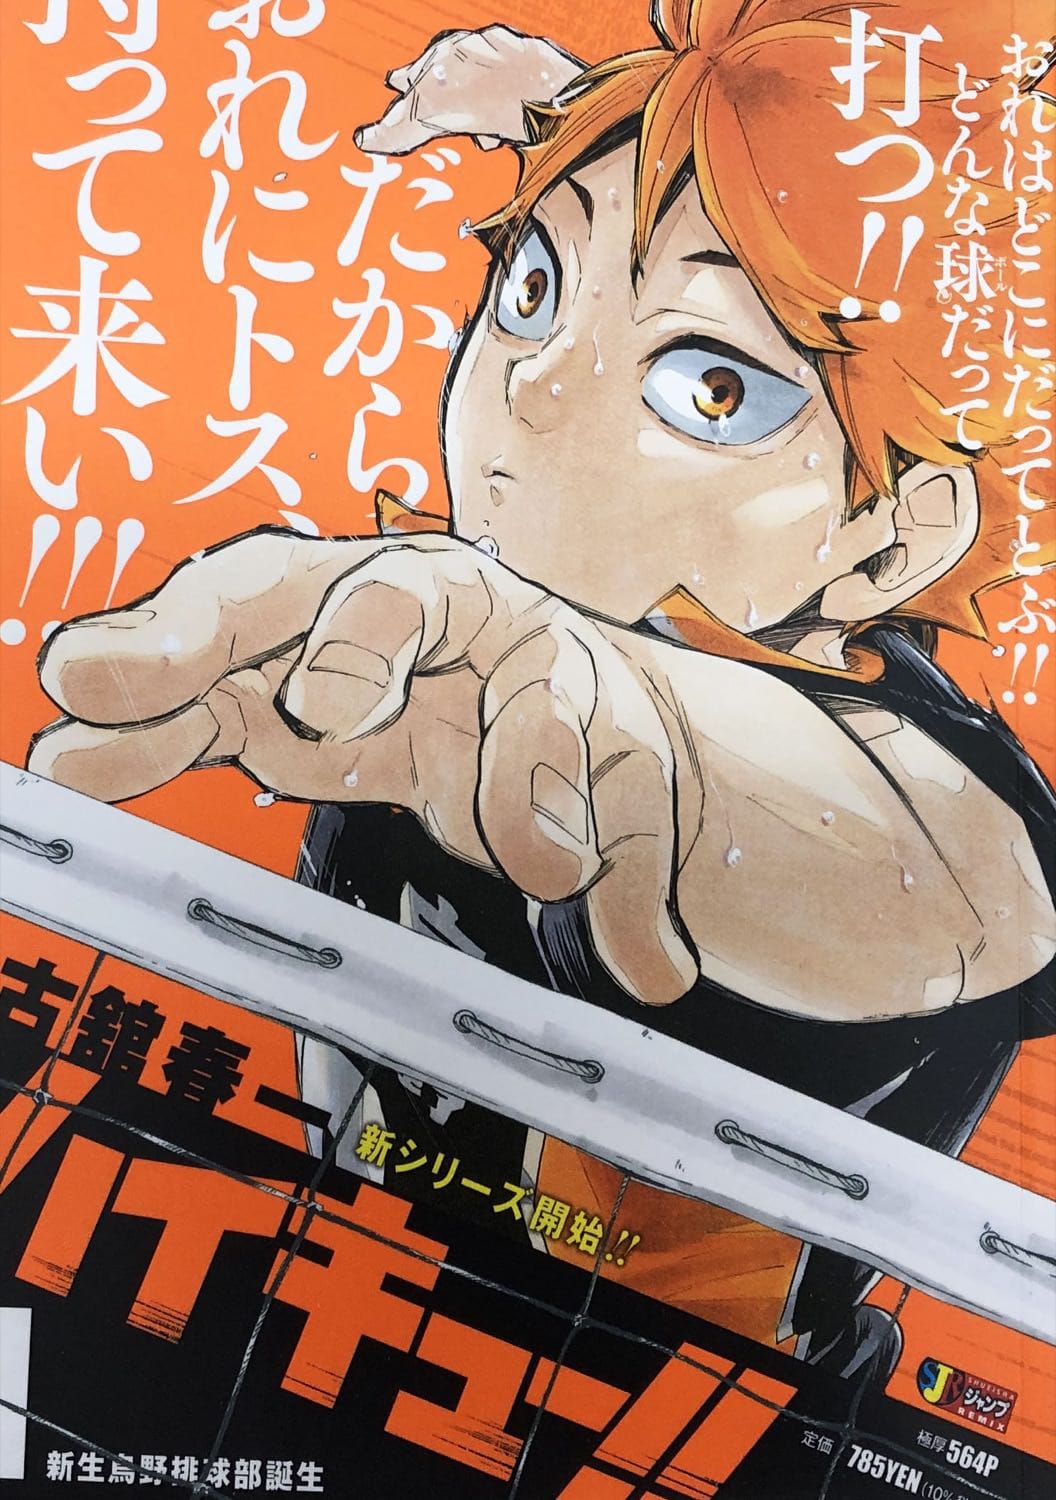 ハイキュー!! リミックス 版 第18巻「挑戦者たち Ⅰ」11月11日発売!